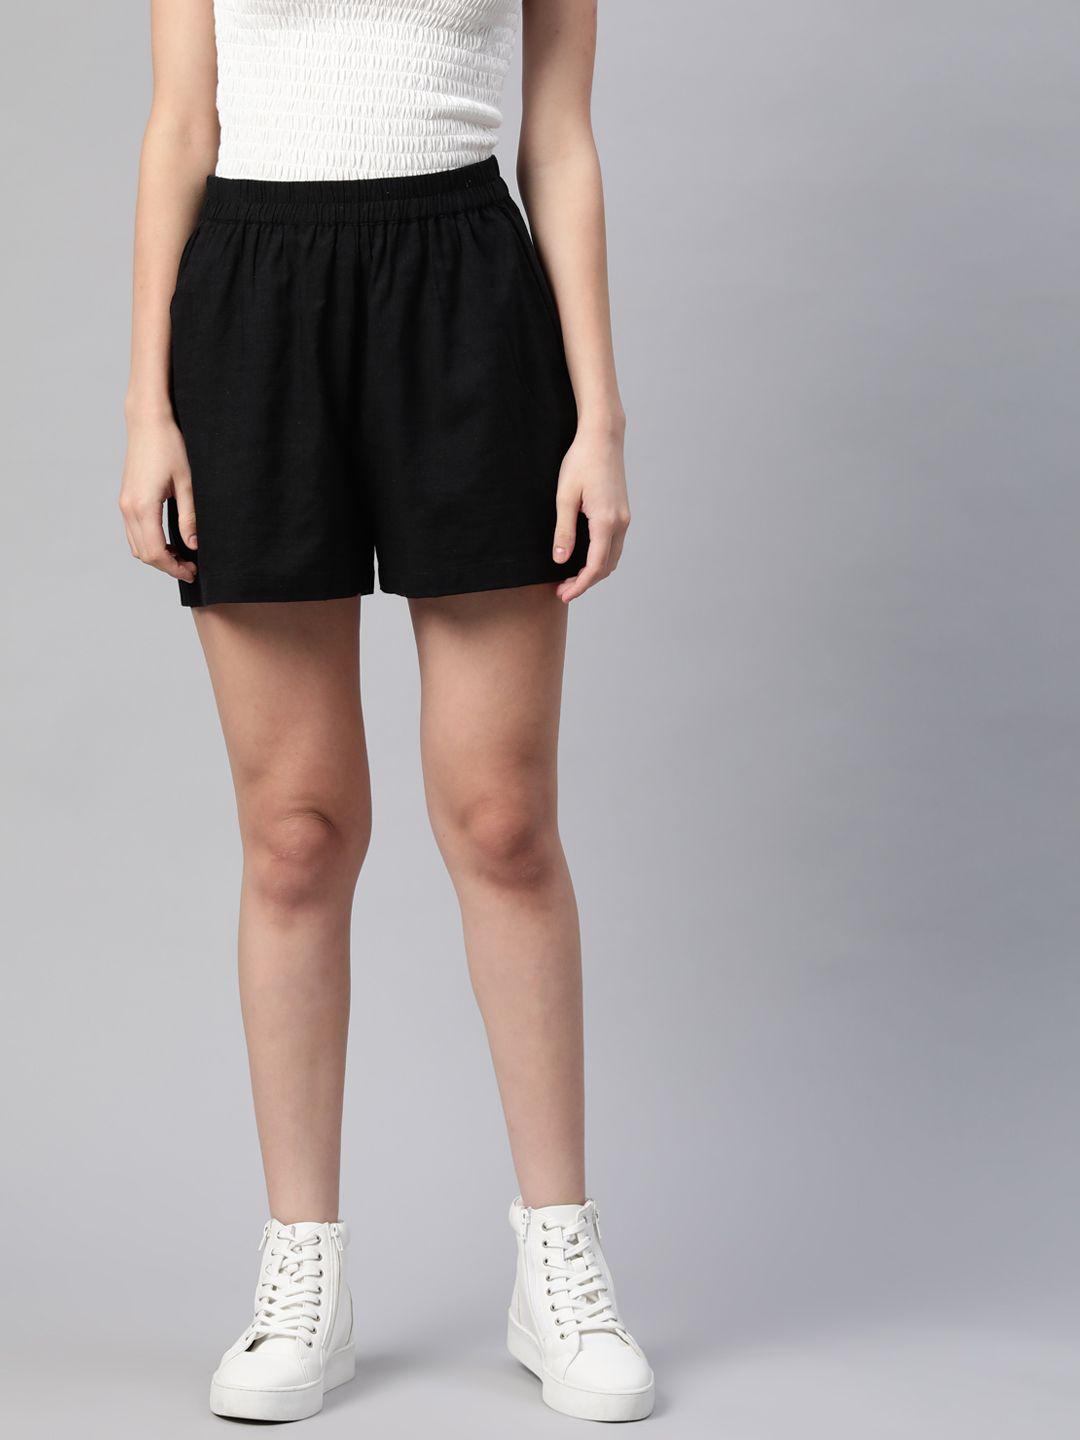 varushka-women-black-loose-fit-shorts